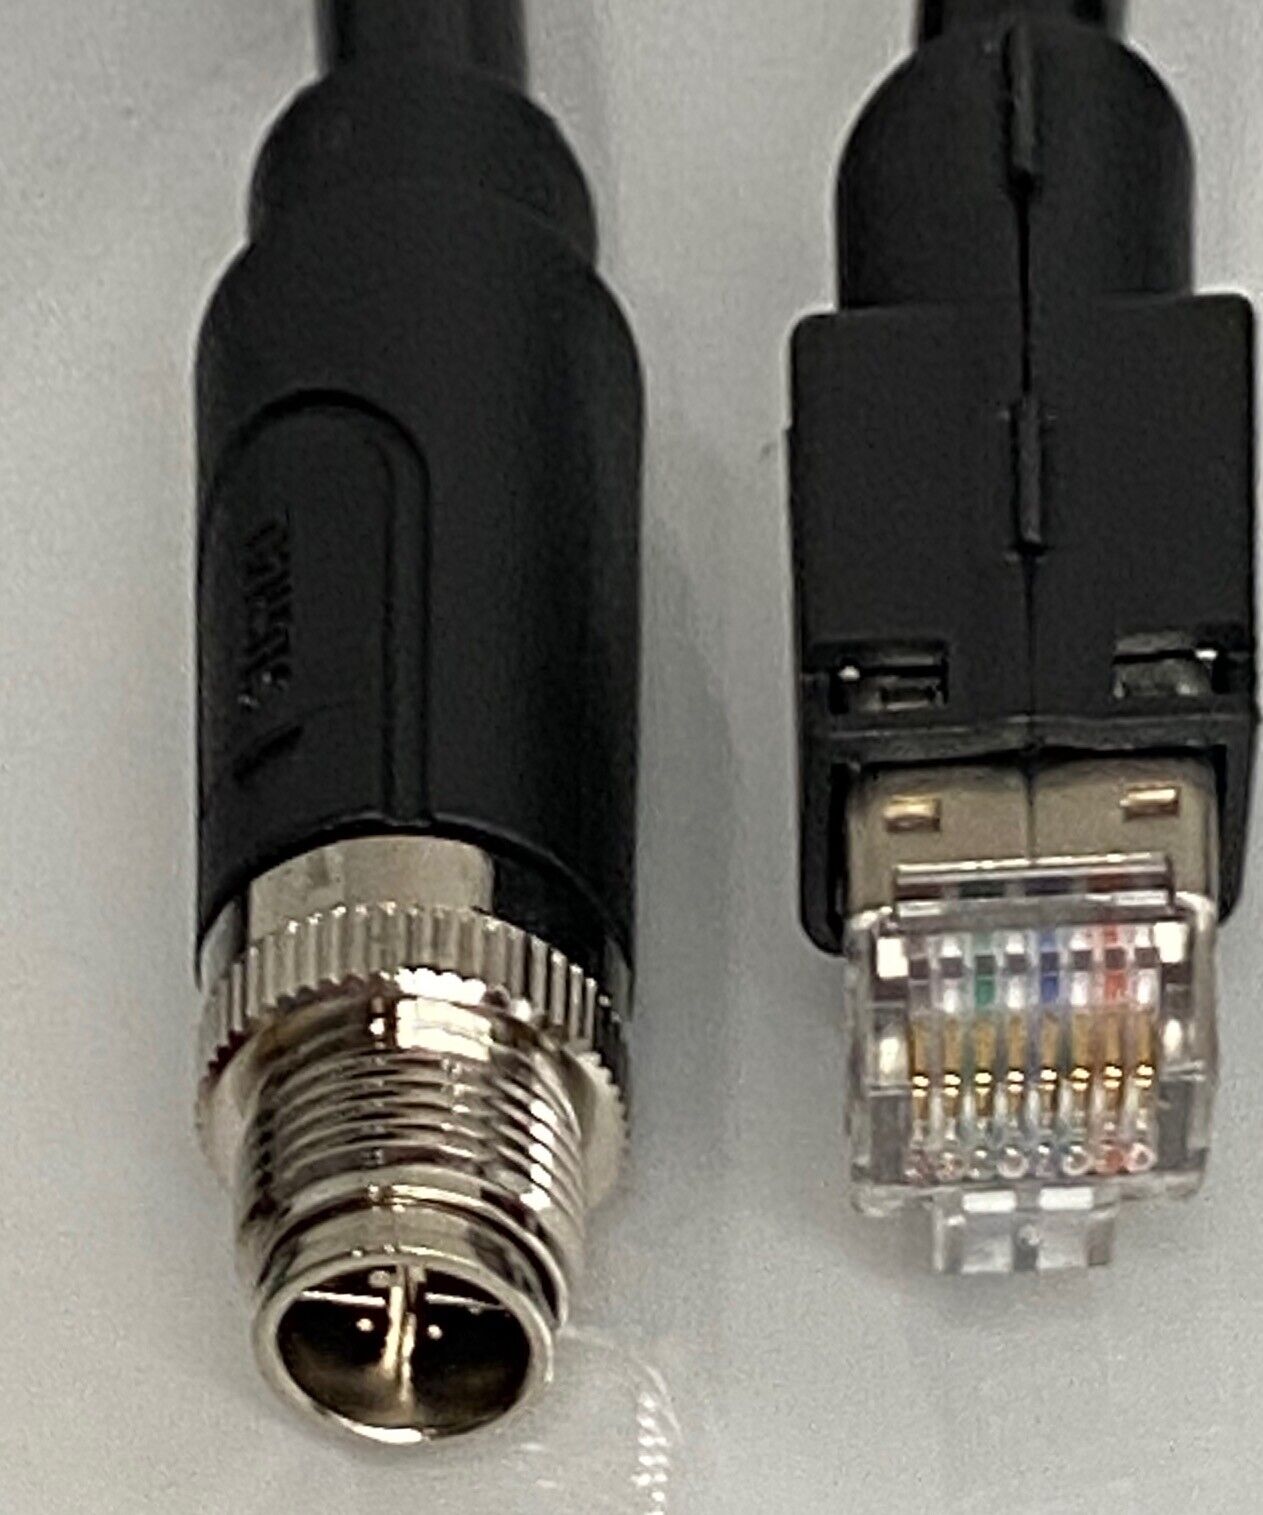 CAB-ETHRJ45-M12-30  Black   M12 to RJ-45 Ethernet cable, 8 pins, X-Code, 30ft